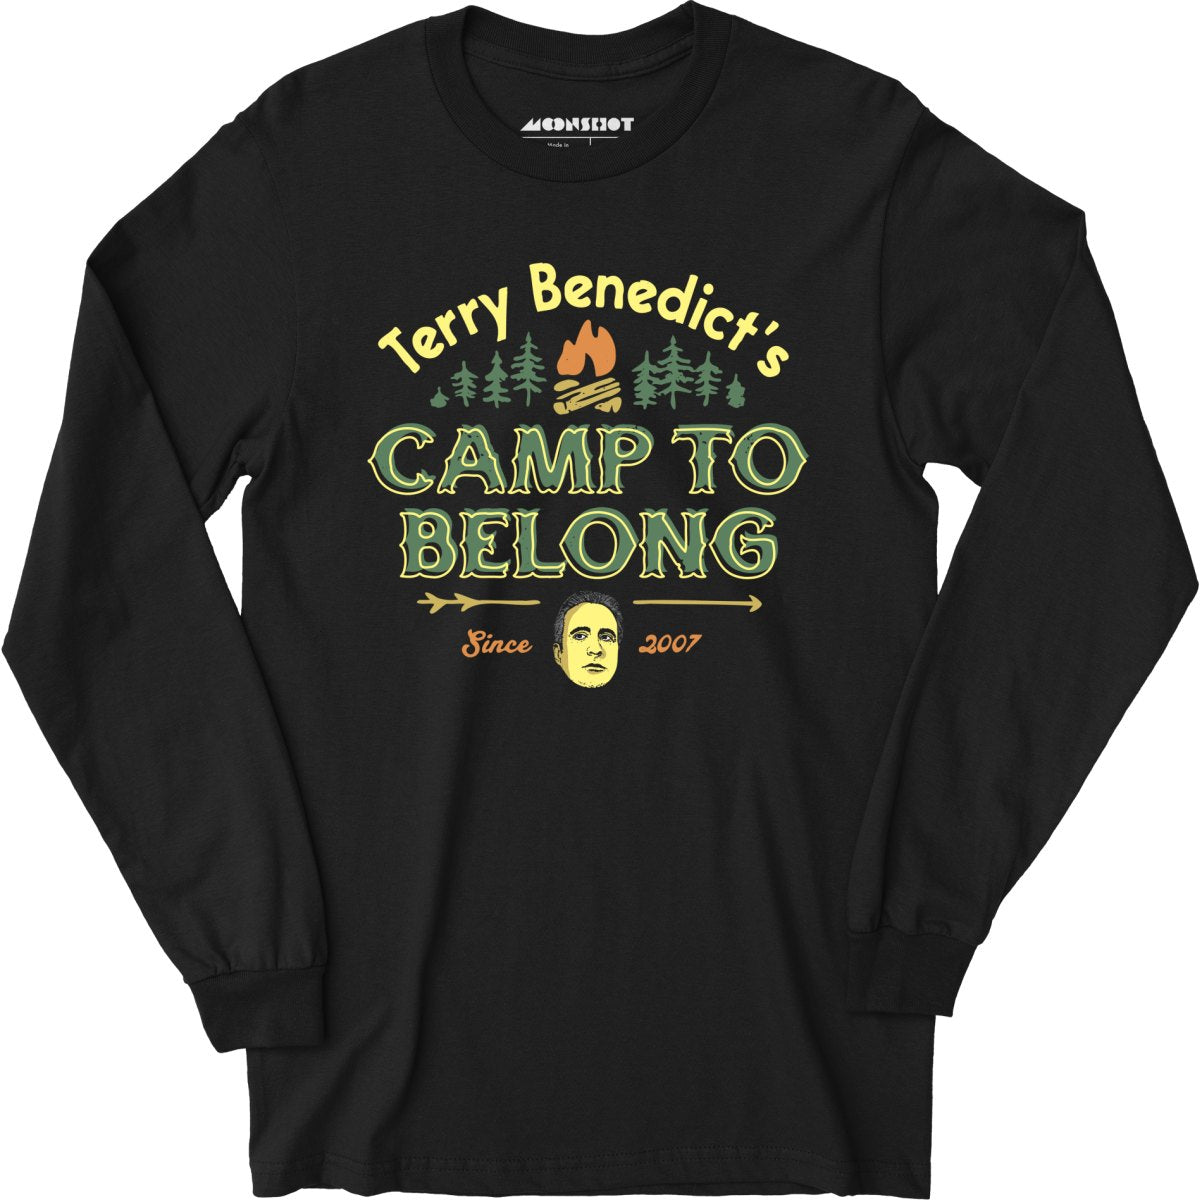 Terry Benedict's Camp to Belong - Long Sleeve T-Shirt